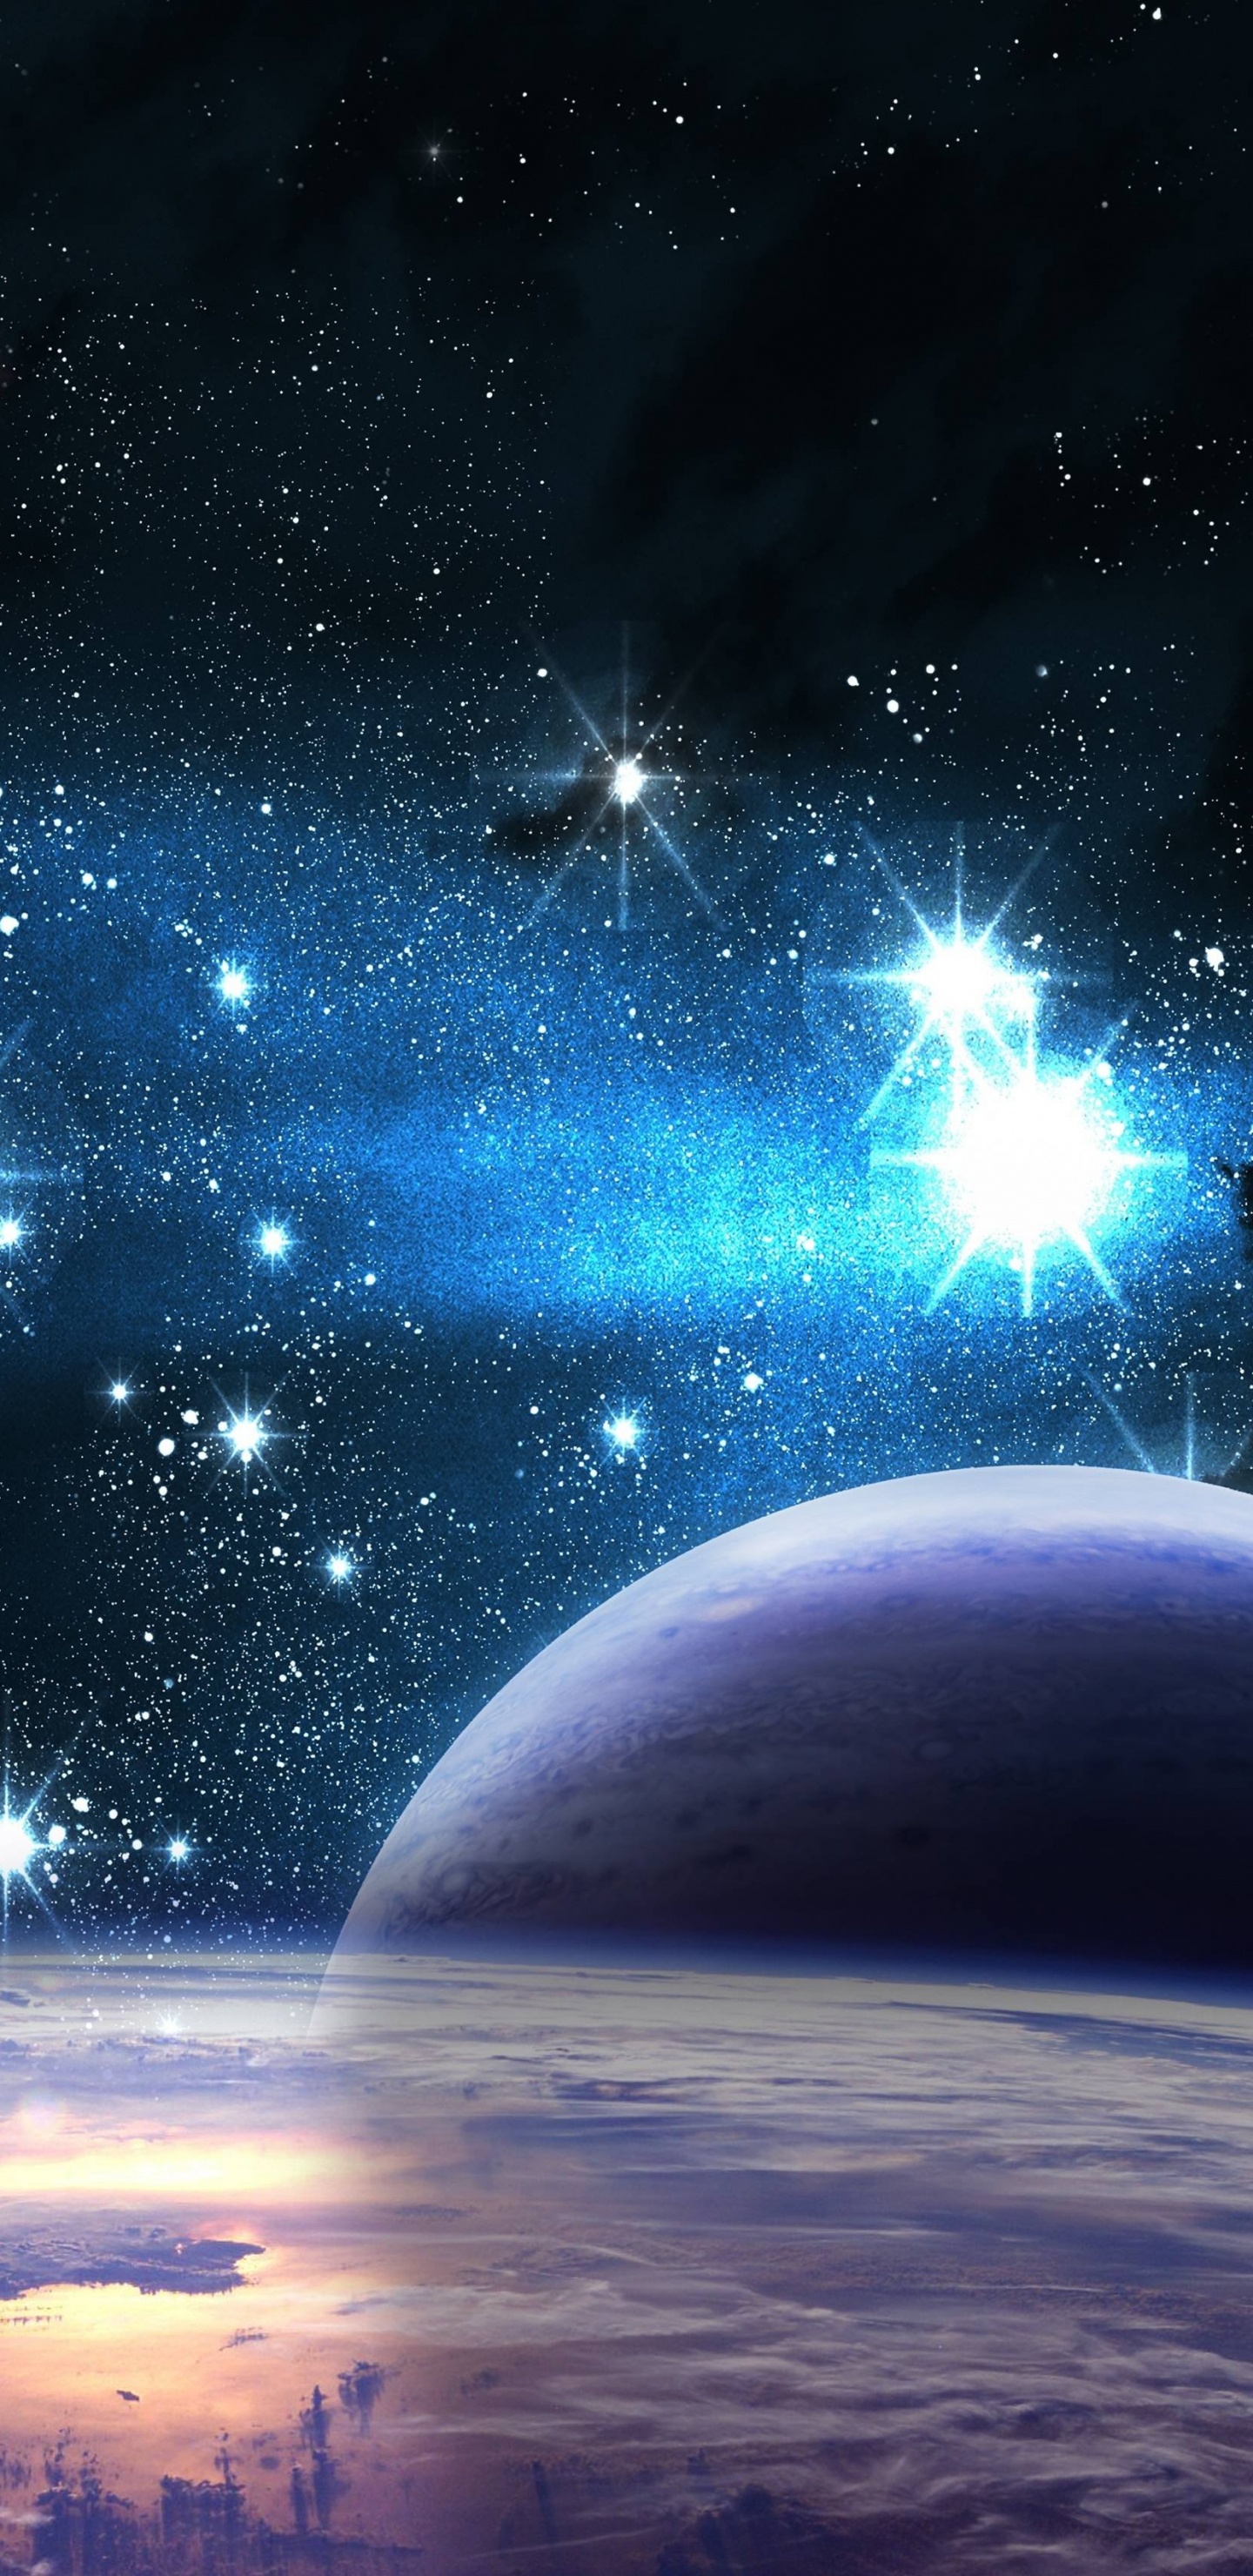 Blau-weißer Planet Mit Sternen. Wallpaper in 1440x2960 Resolution